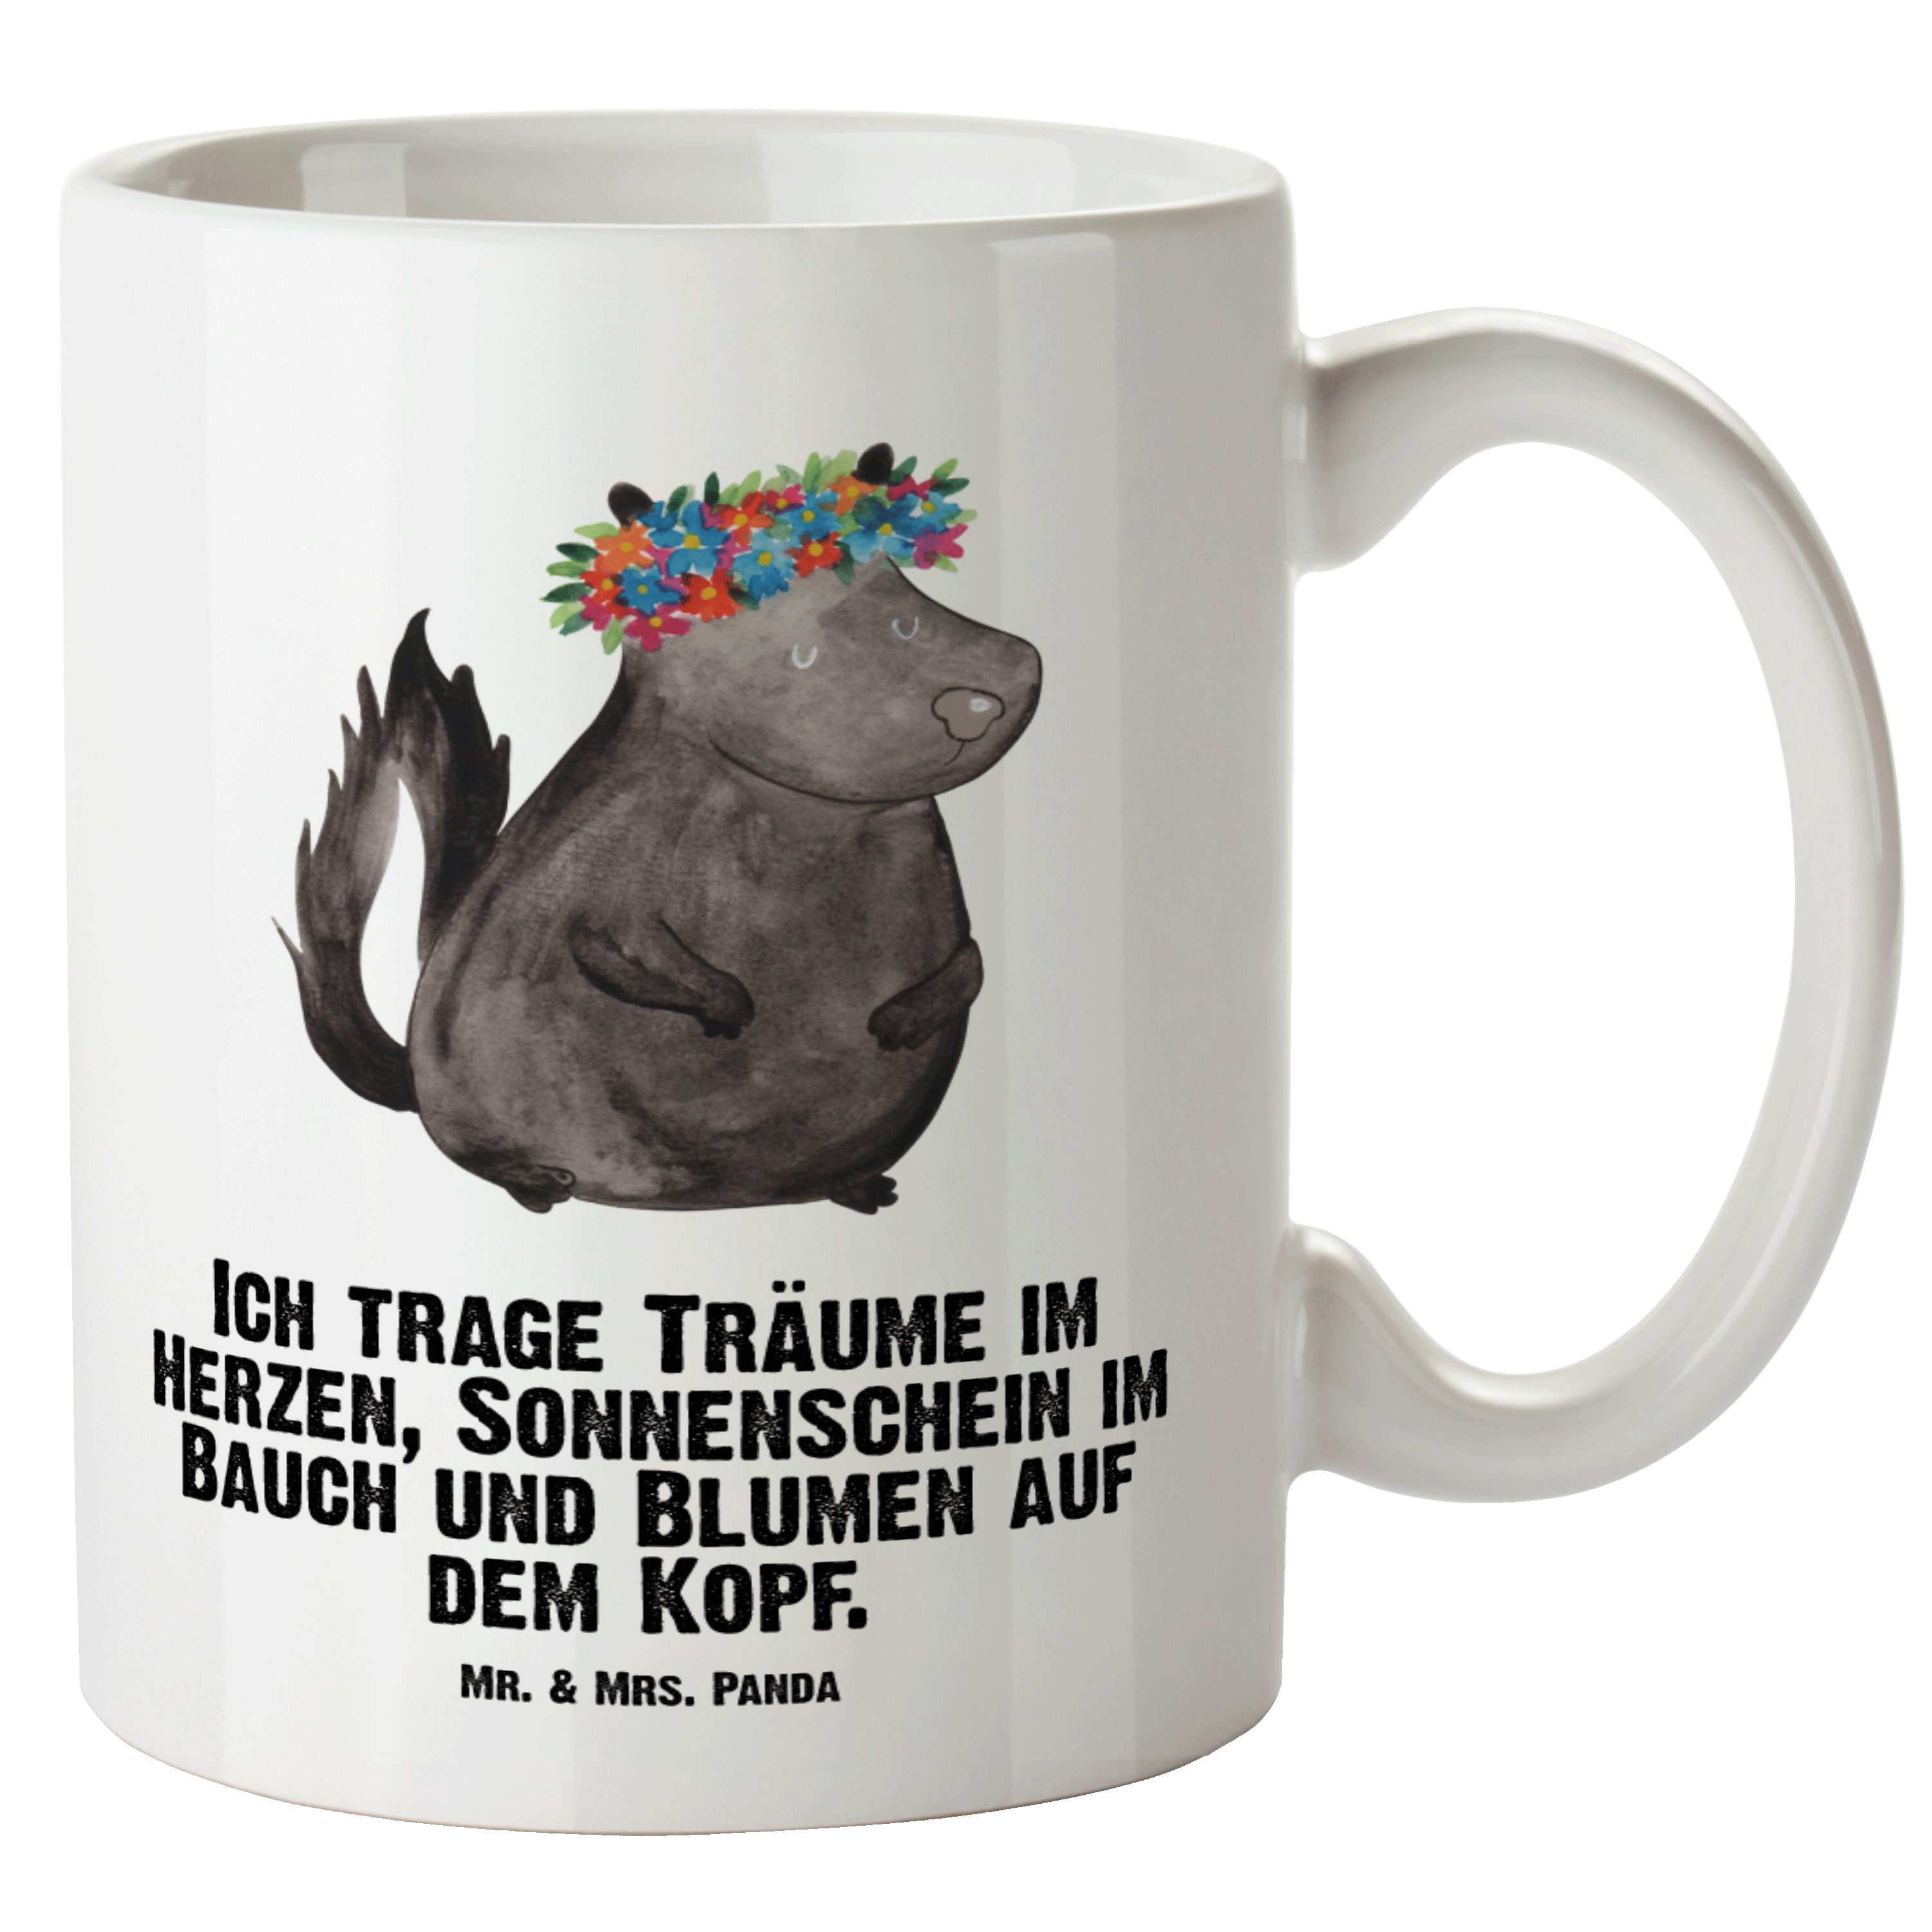 Mr. & Mrs. Panda Tasse Stinktier Blumenmaedchen - Weiß - Geschenk, Große Tasse, Yoga, Grosse, XL Tasse Keramik